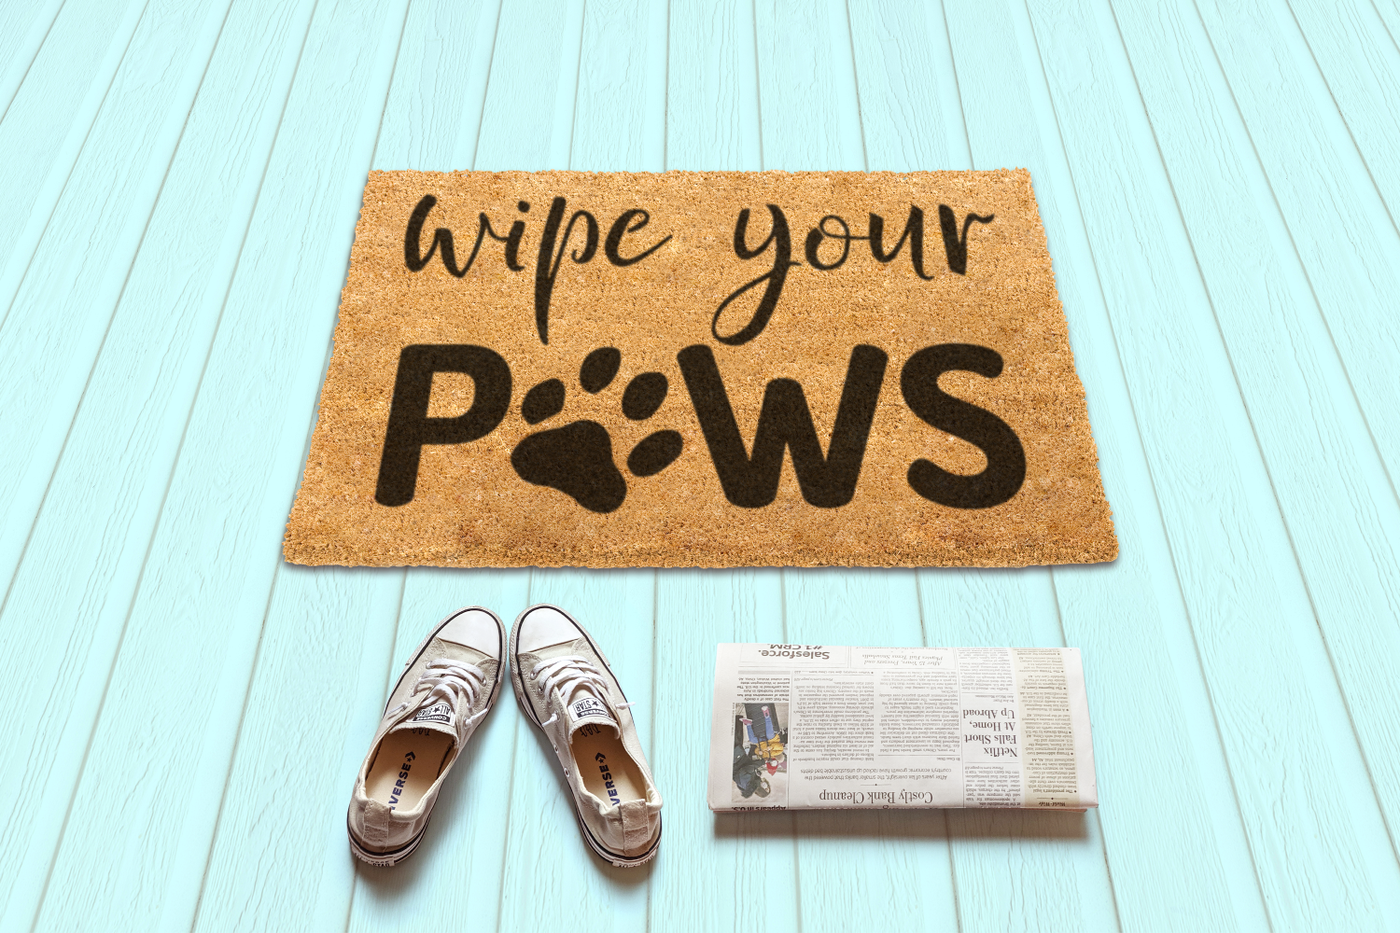 wipe your paws doormat design